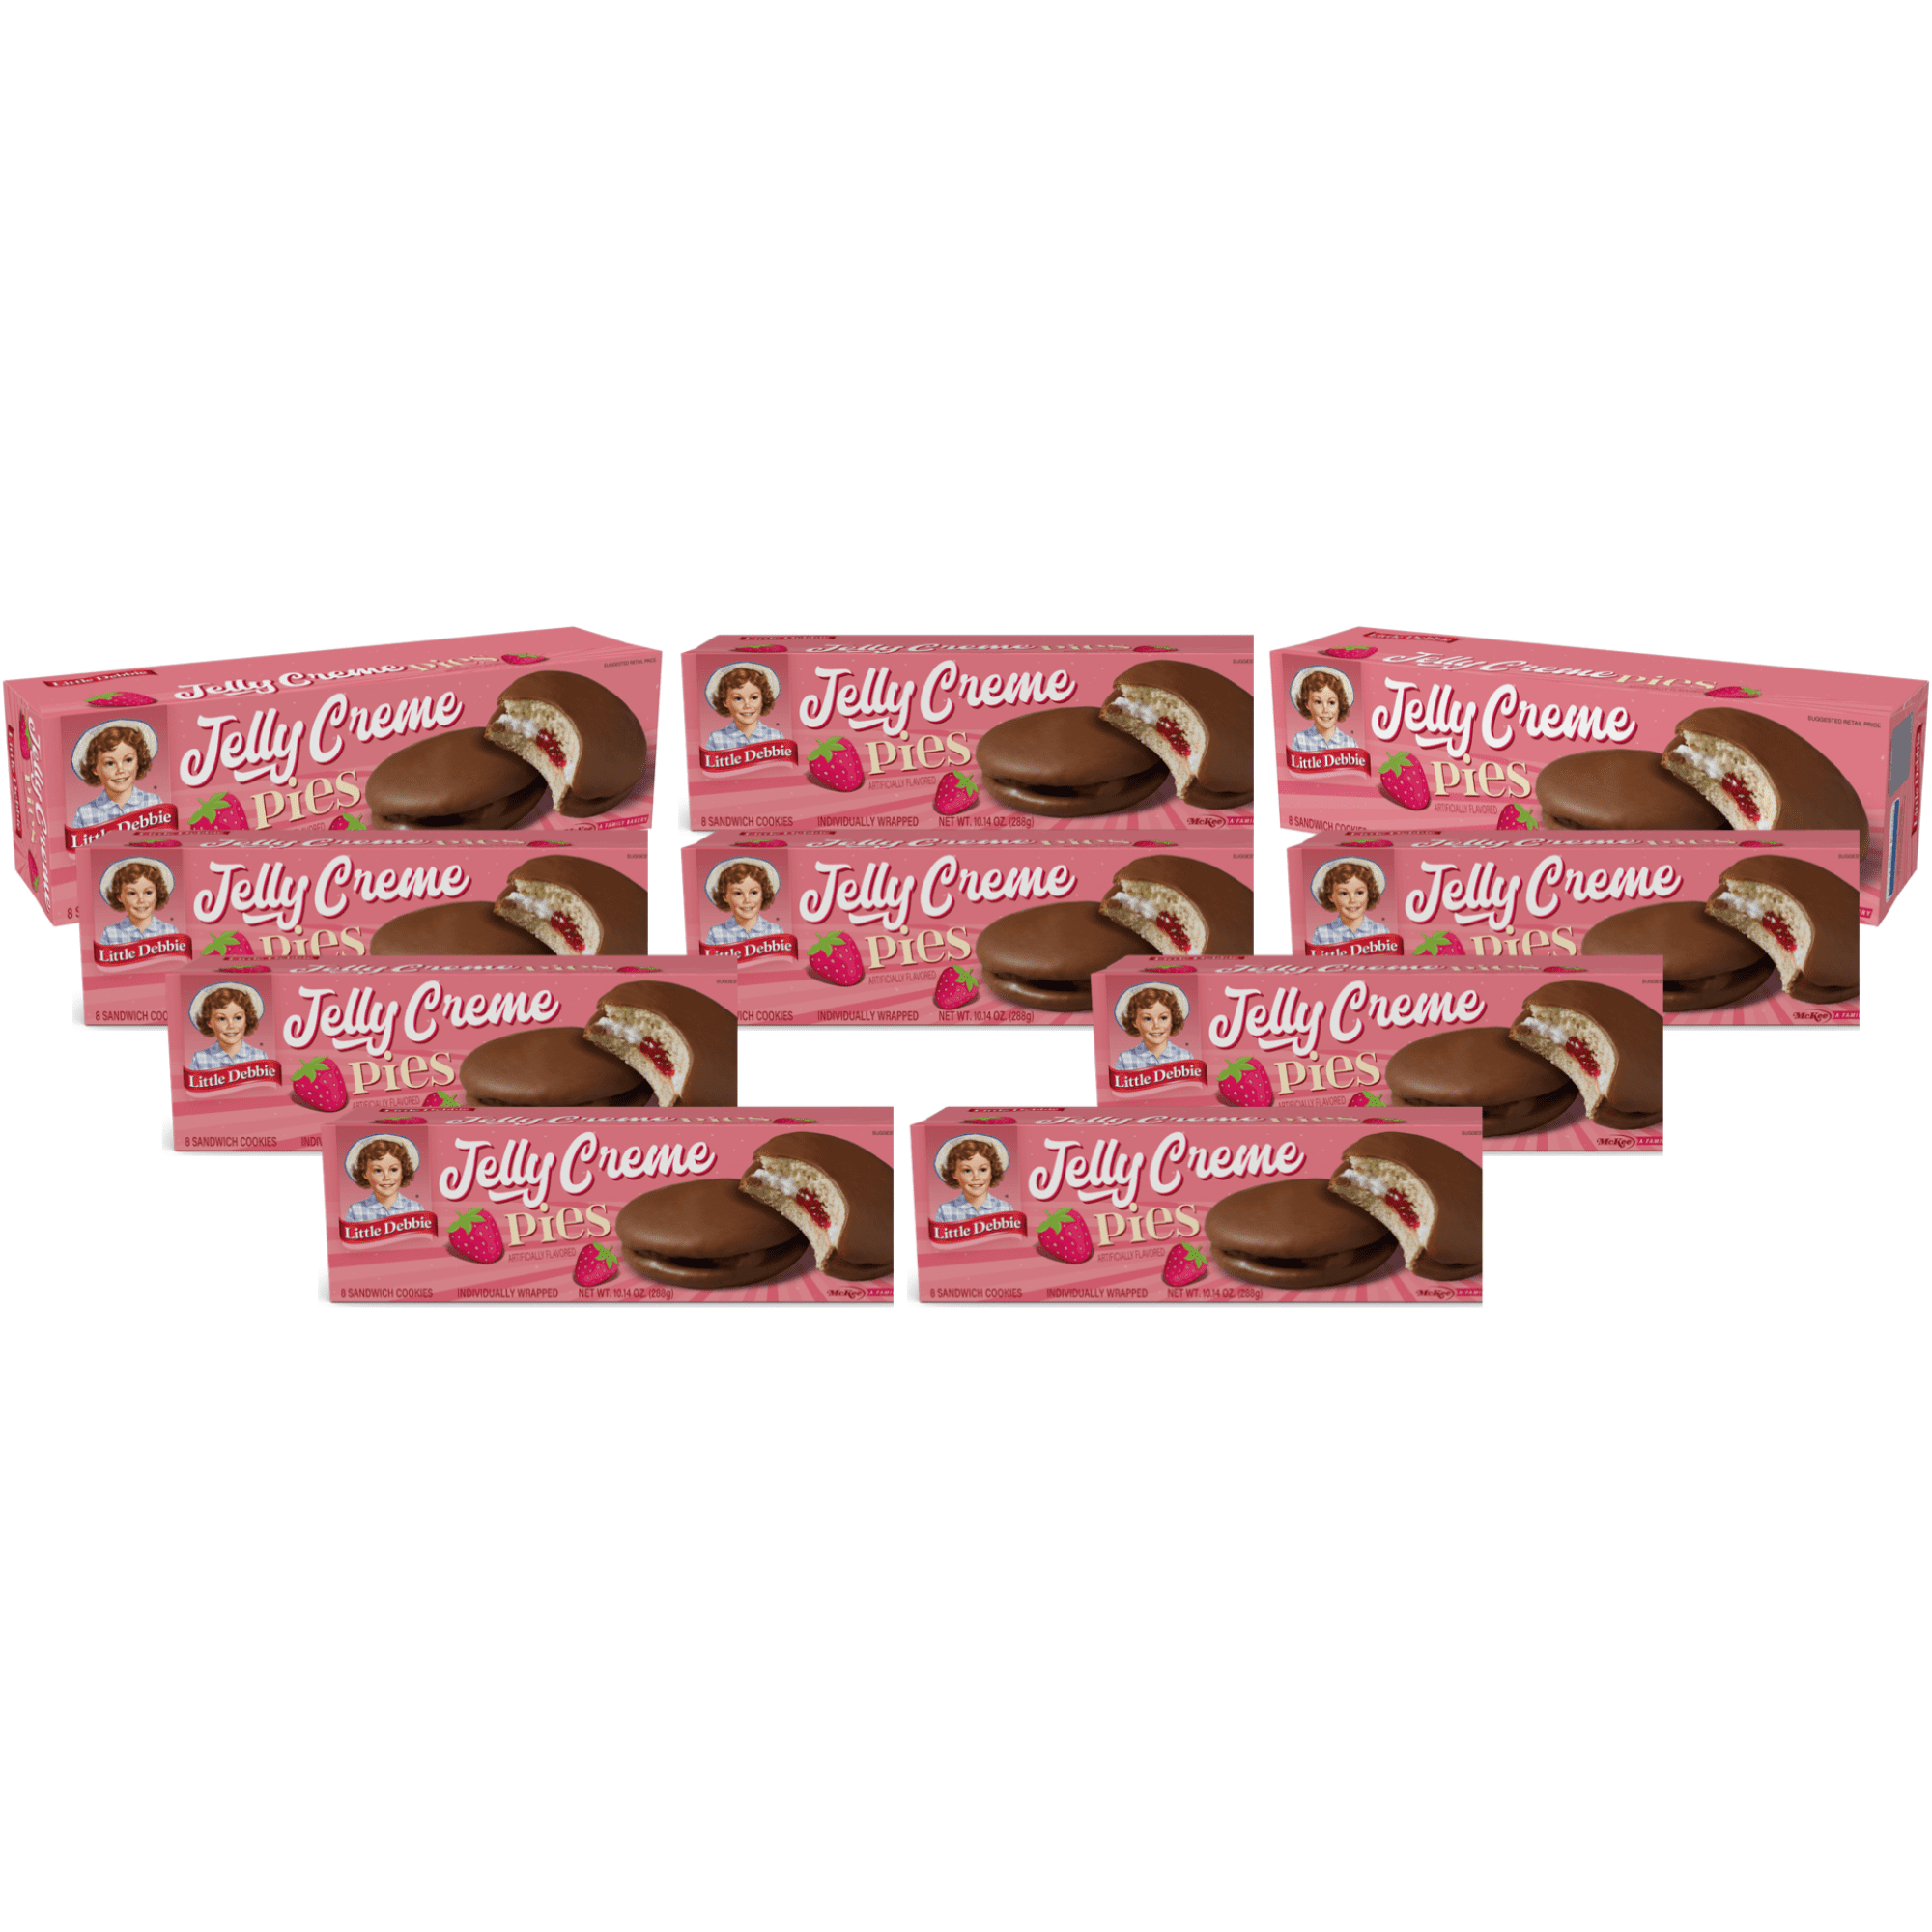 Little Debbie Jelly Crème Pies, 10 Boxes - Walmart.com